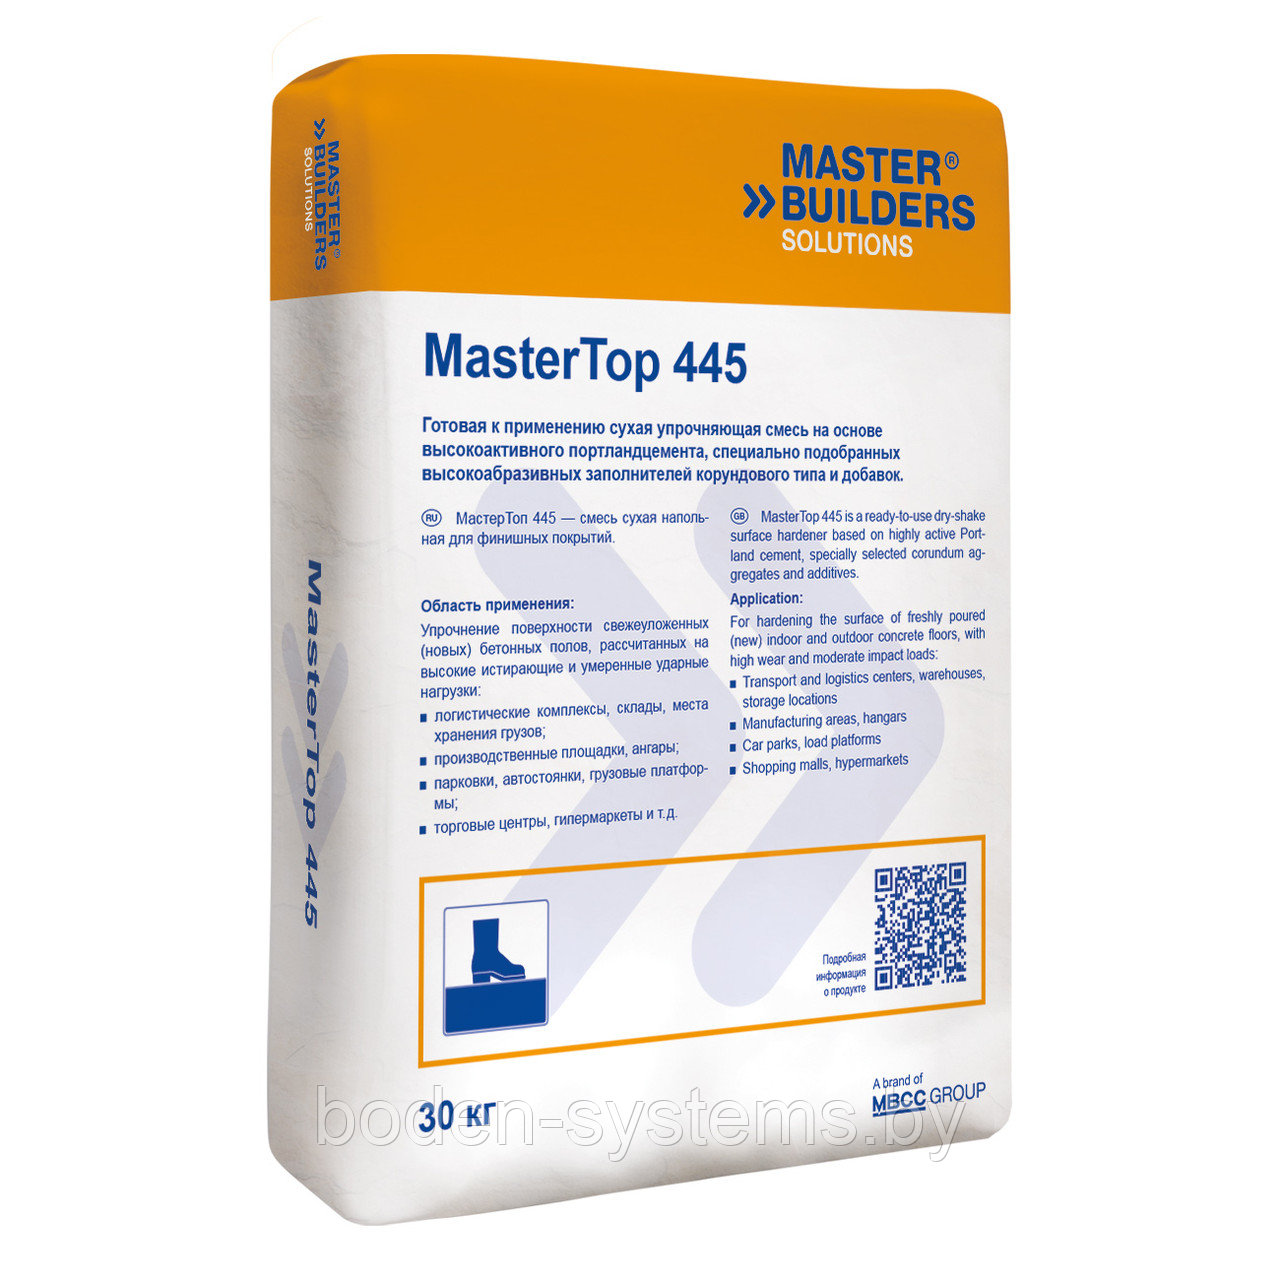 MasterTop 445 – топпинг на основе высокоабразивных заполнителей корундового типа и добавок